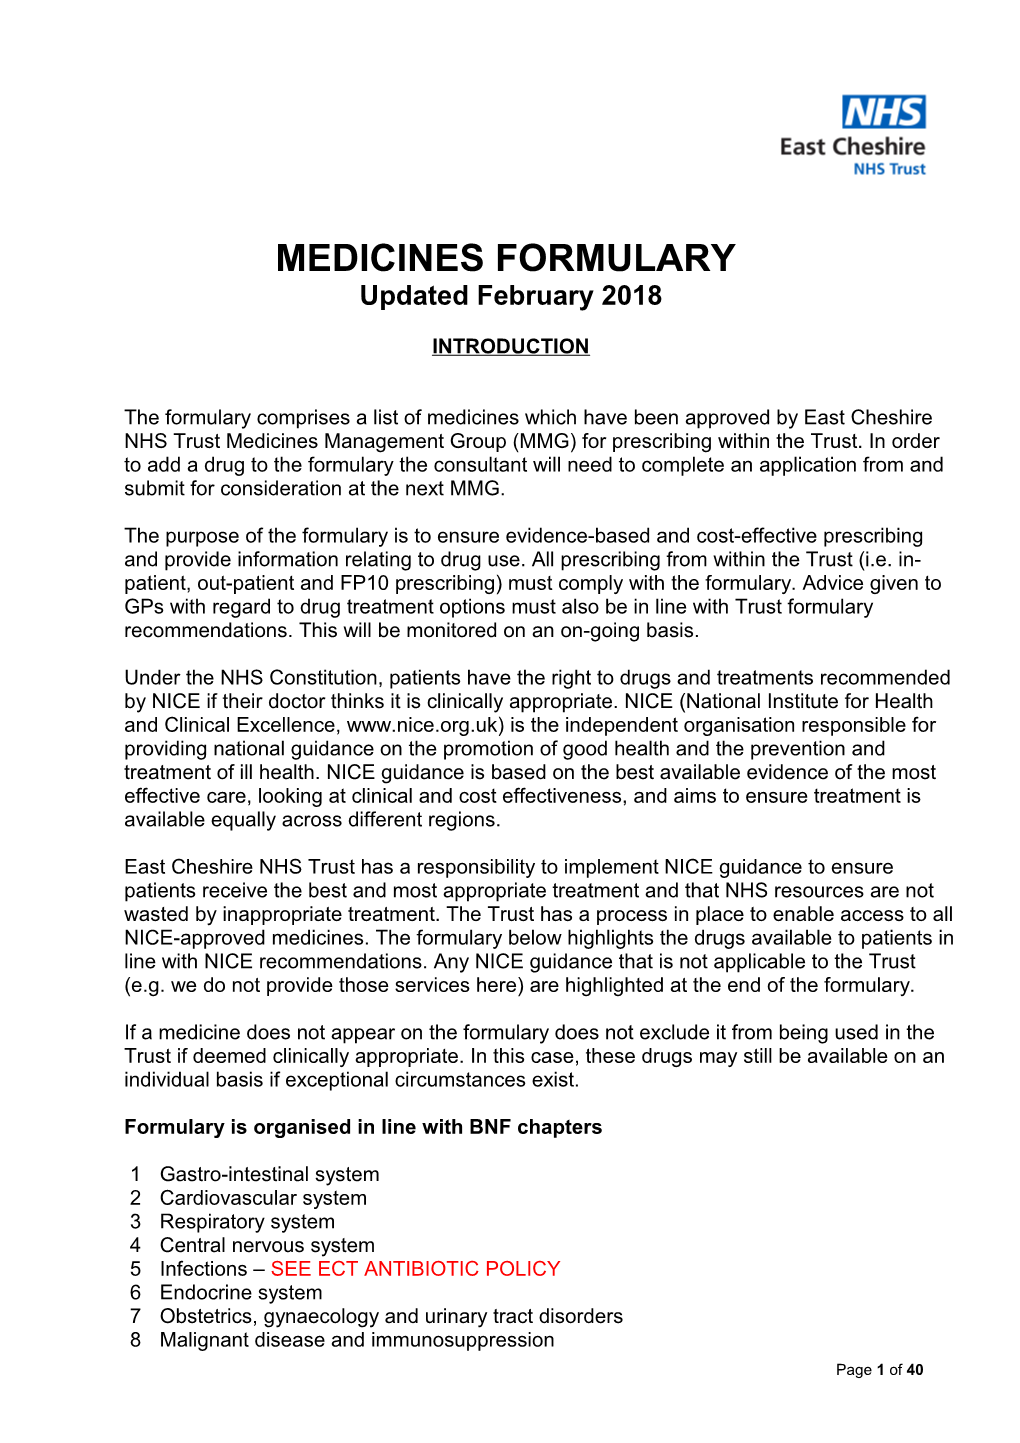 Medicines Formulary